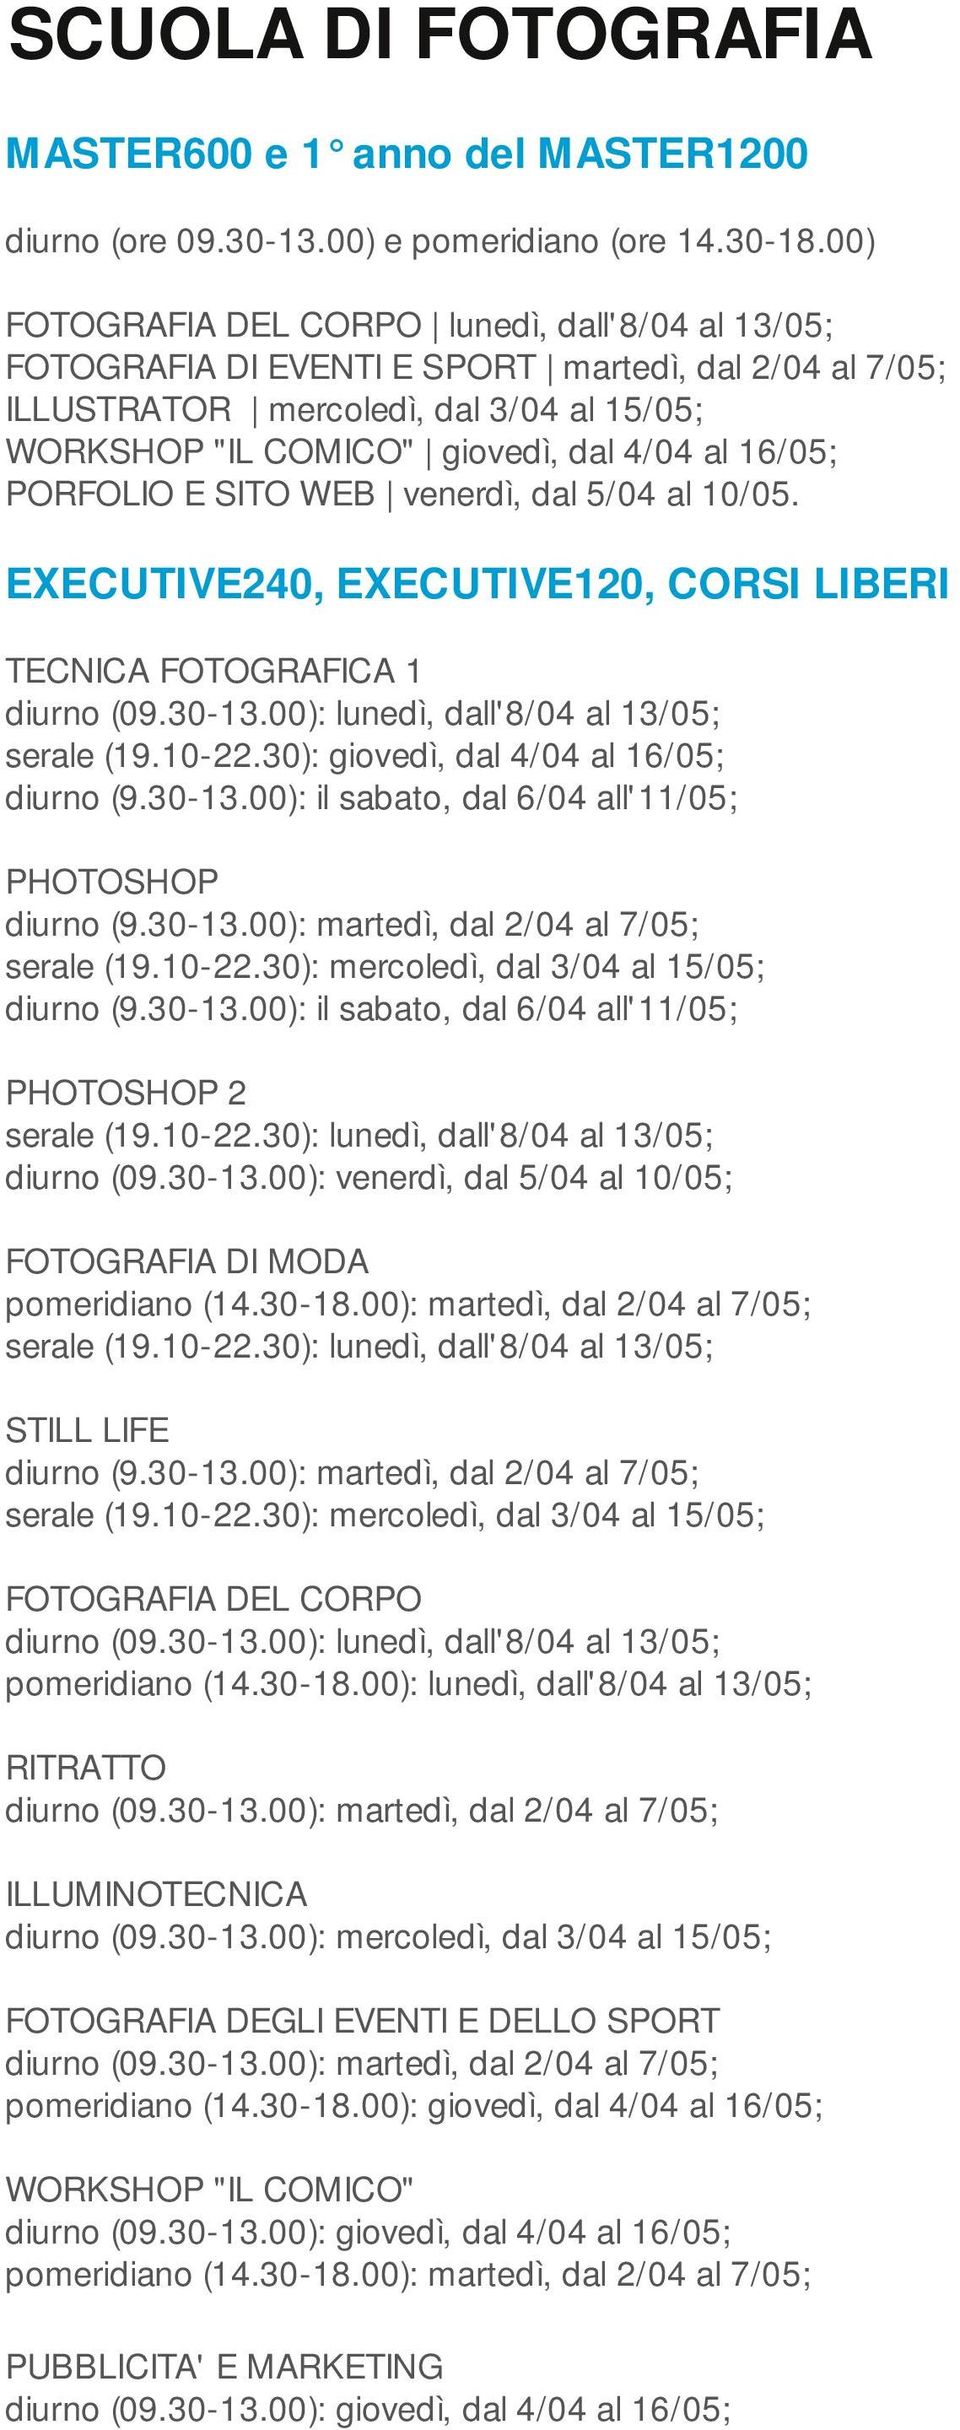 00): venerdì, dal 5/04 al 10/05; FOTOGRAFIA DI MODA STILL LIFE FOTOGRAFIA DEL CORPO pomeridiano (14.30-18.00): lunedì, dall'8/04 al 13/05; RITRATTO diurno (09.30-13.